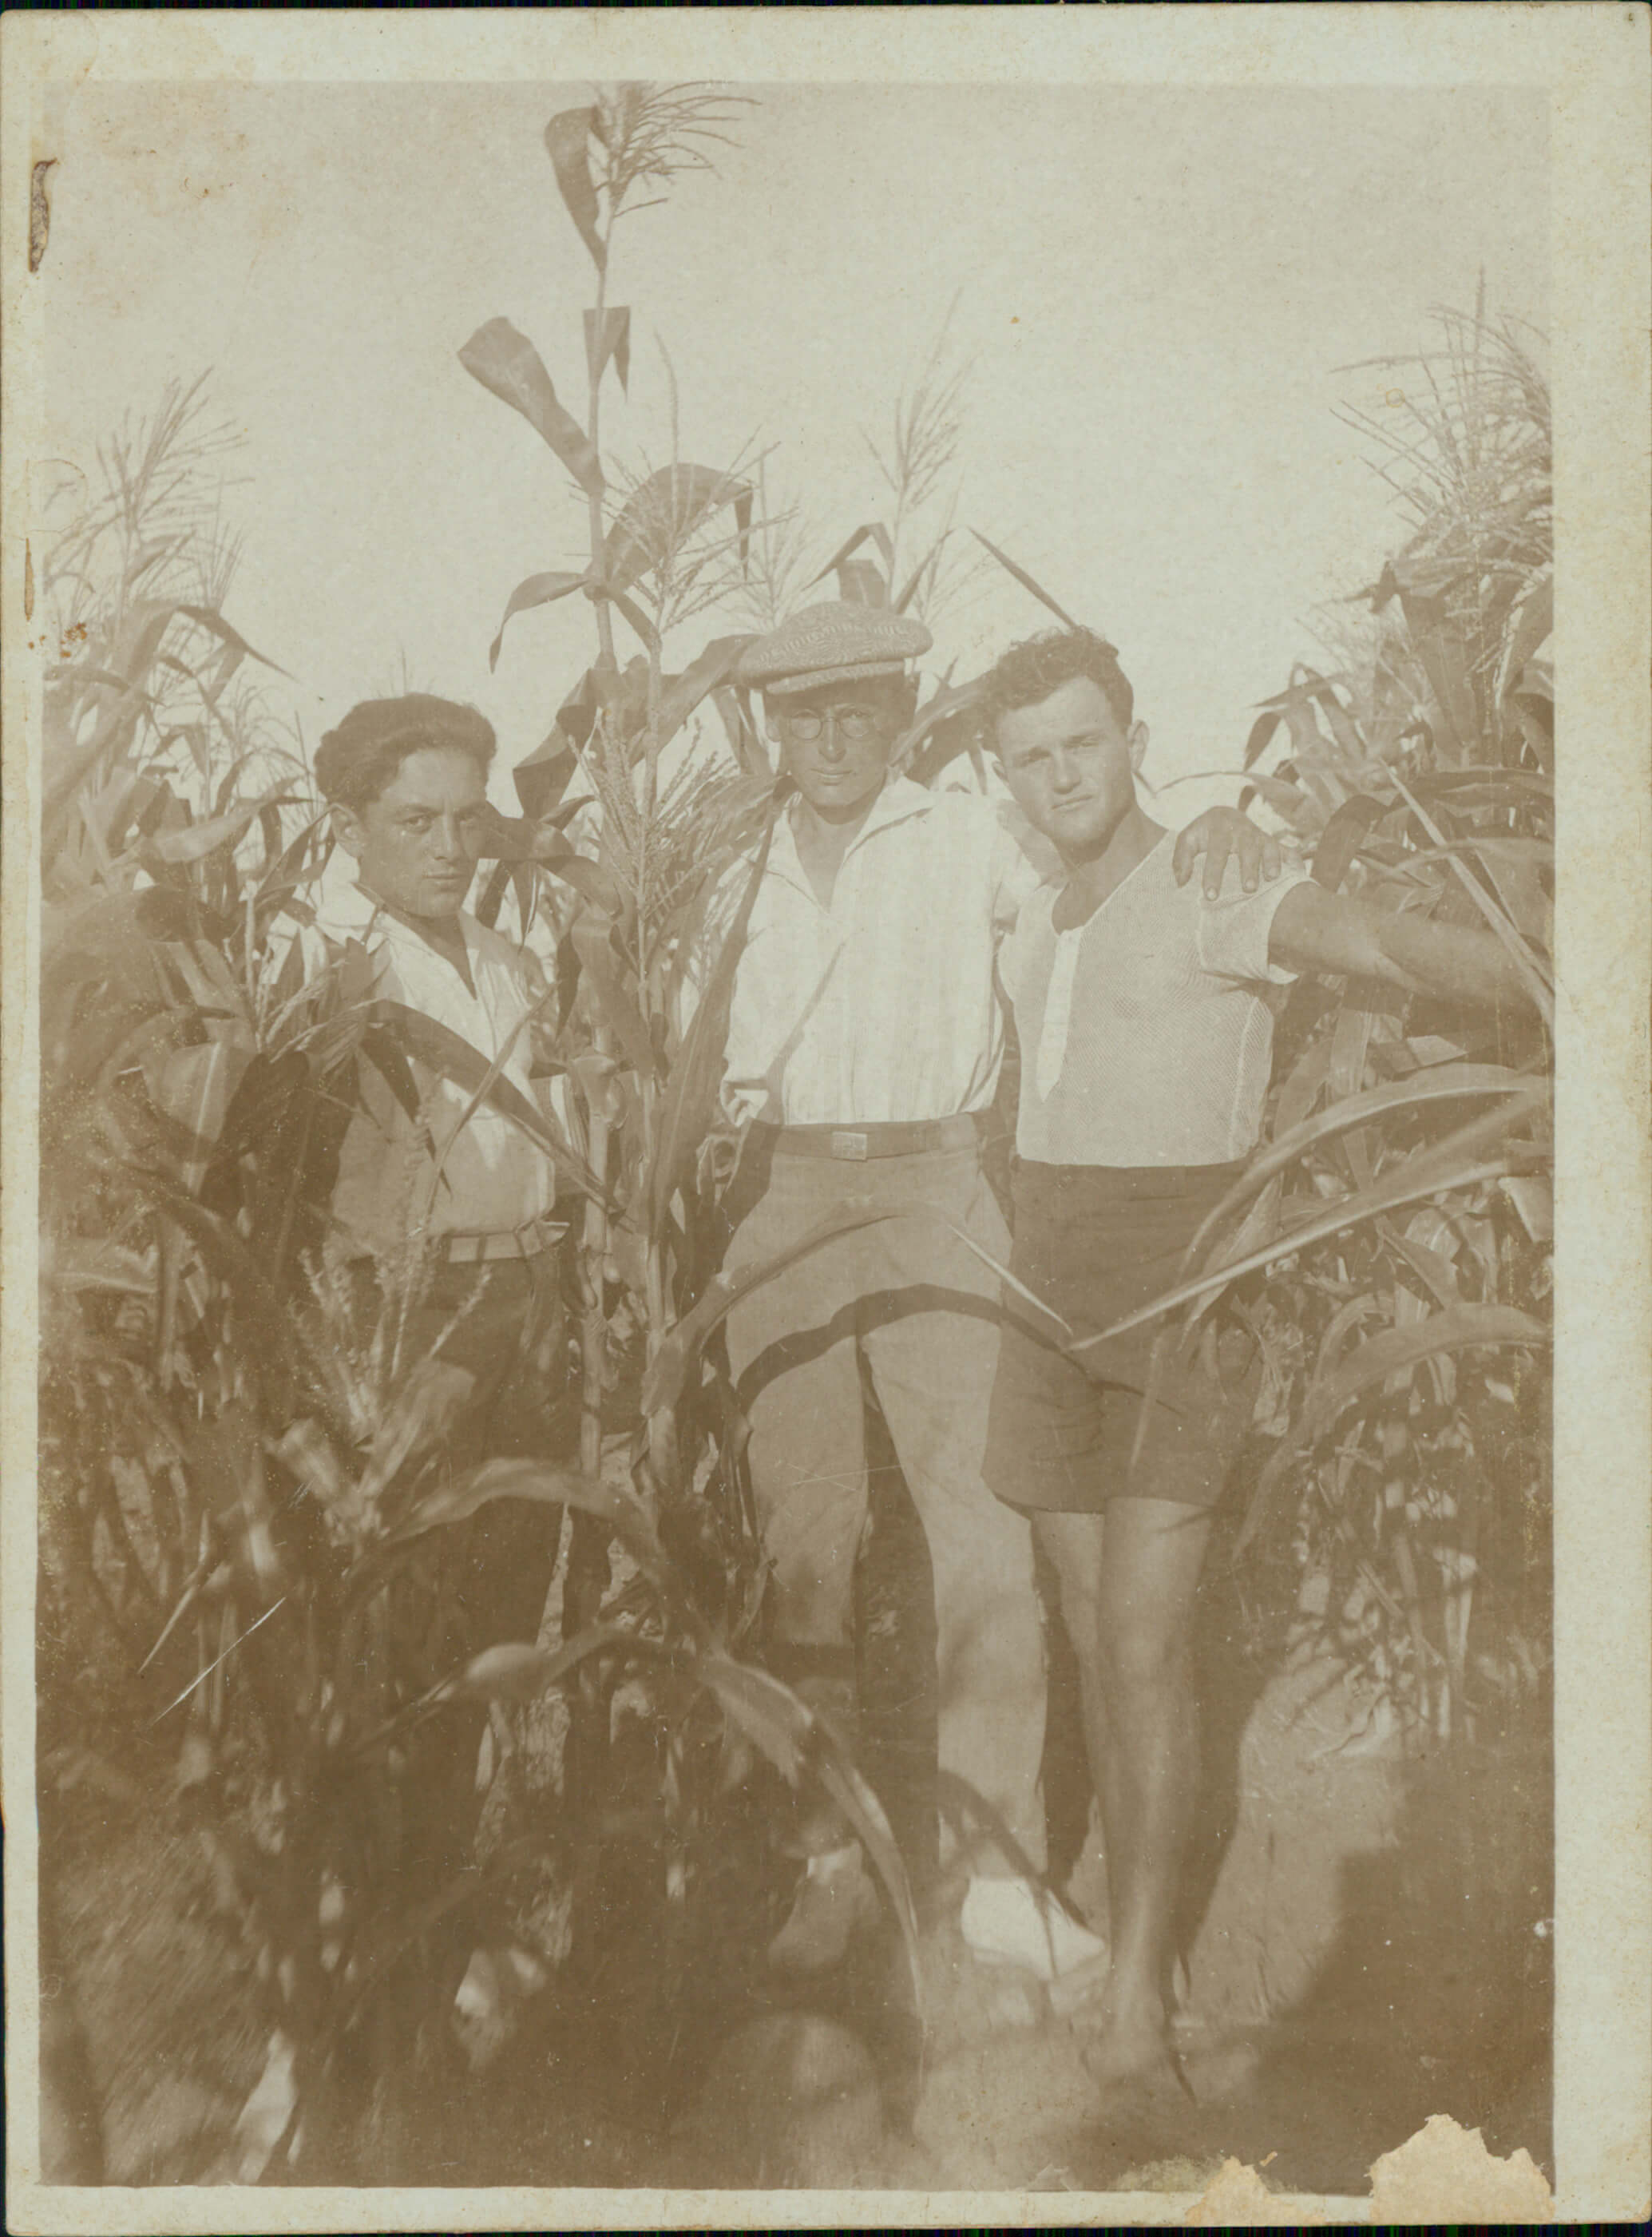 דוד הירשהורן במרכז התמונה עם חברים בשדה התירס ברעננה, שנות ה-30